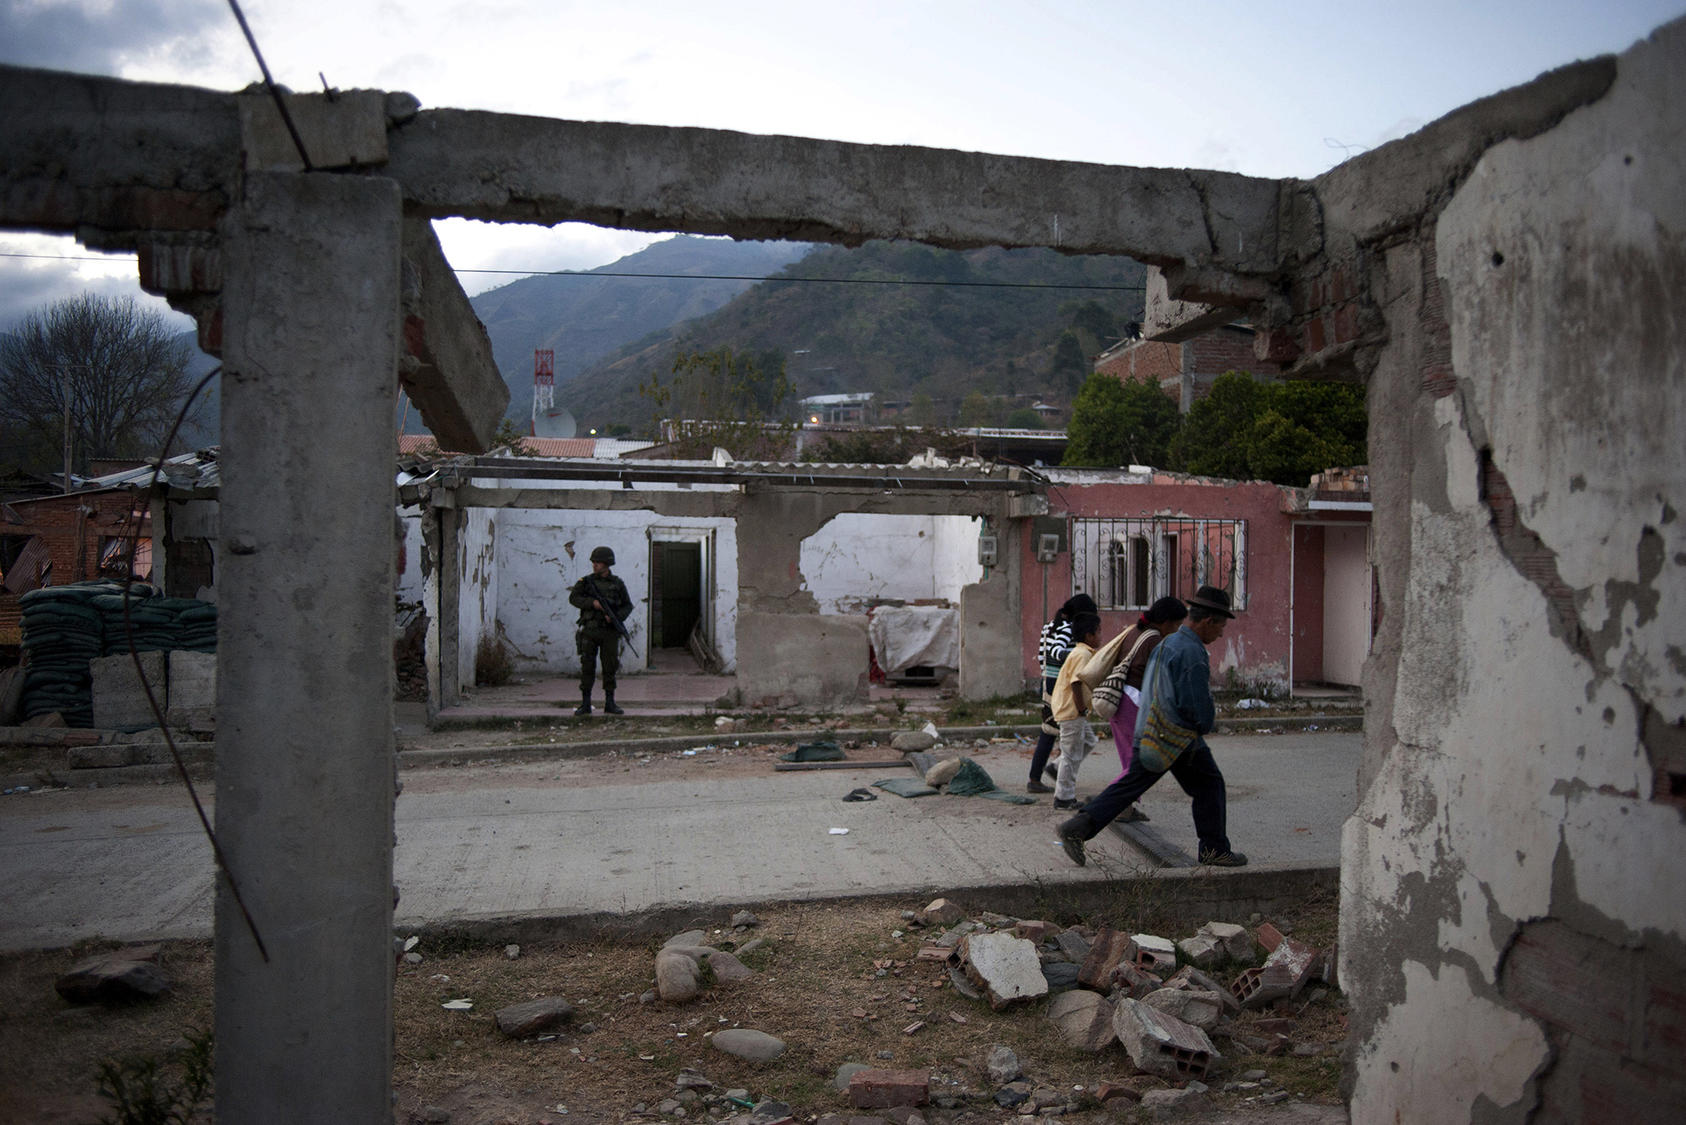 Soldados vigilan un pueblo del Pacífico Colombiano, al comienzo de las diálogos de paz en 2012. Nueve años después, la región sigue siendo violenta, con poca presencia del gobierno en las zonas rurales. (Stephen Ferry / The New York Times)